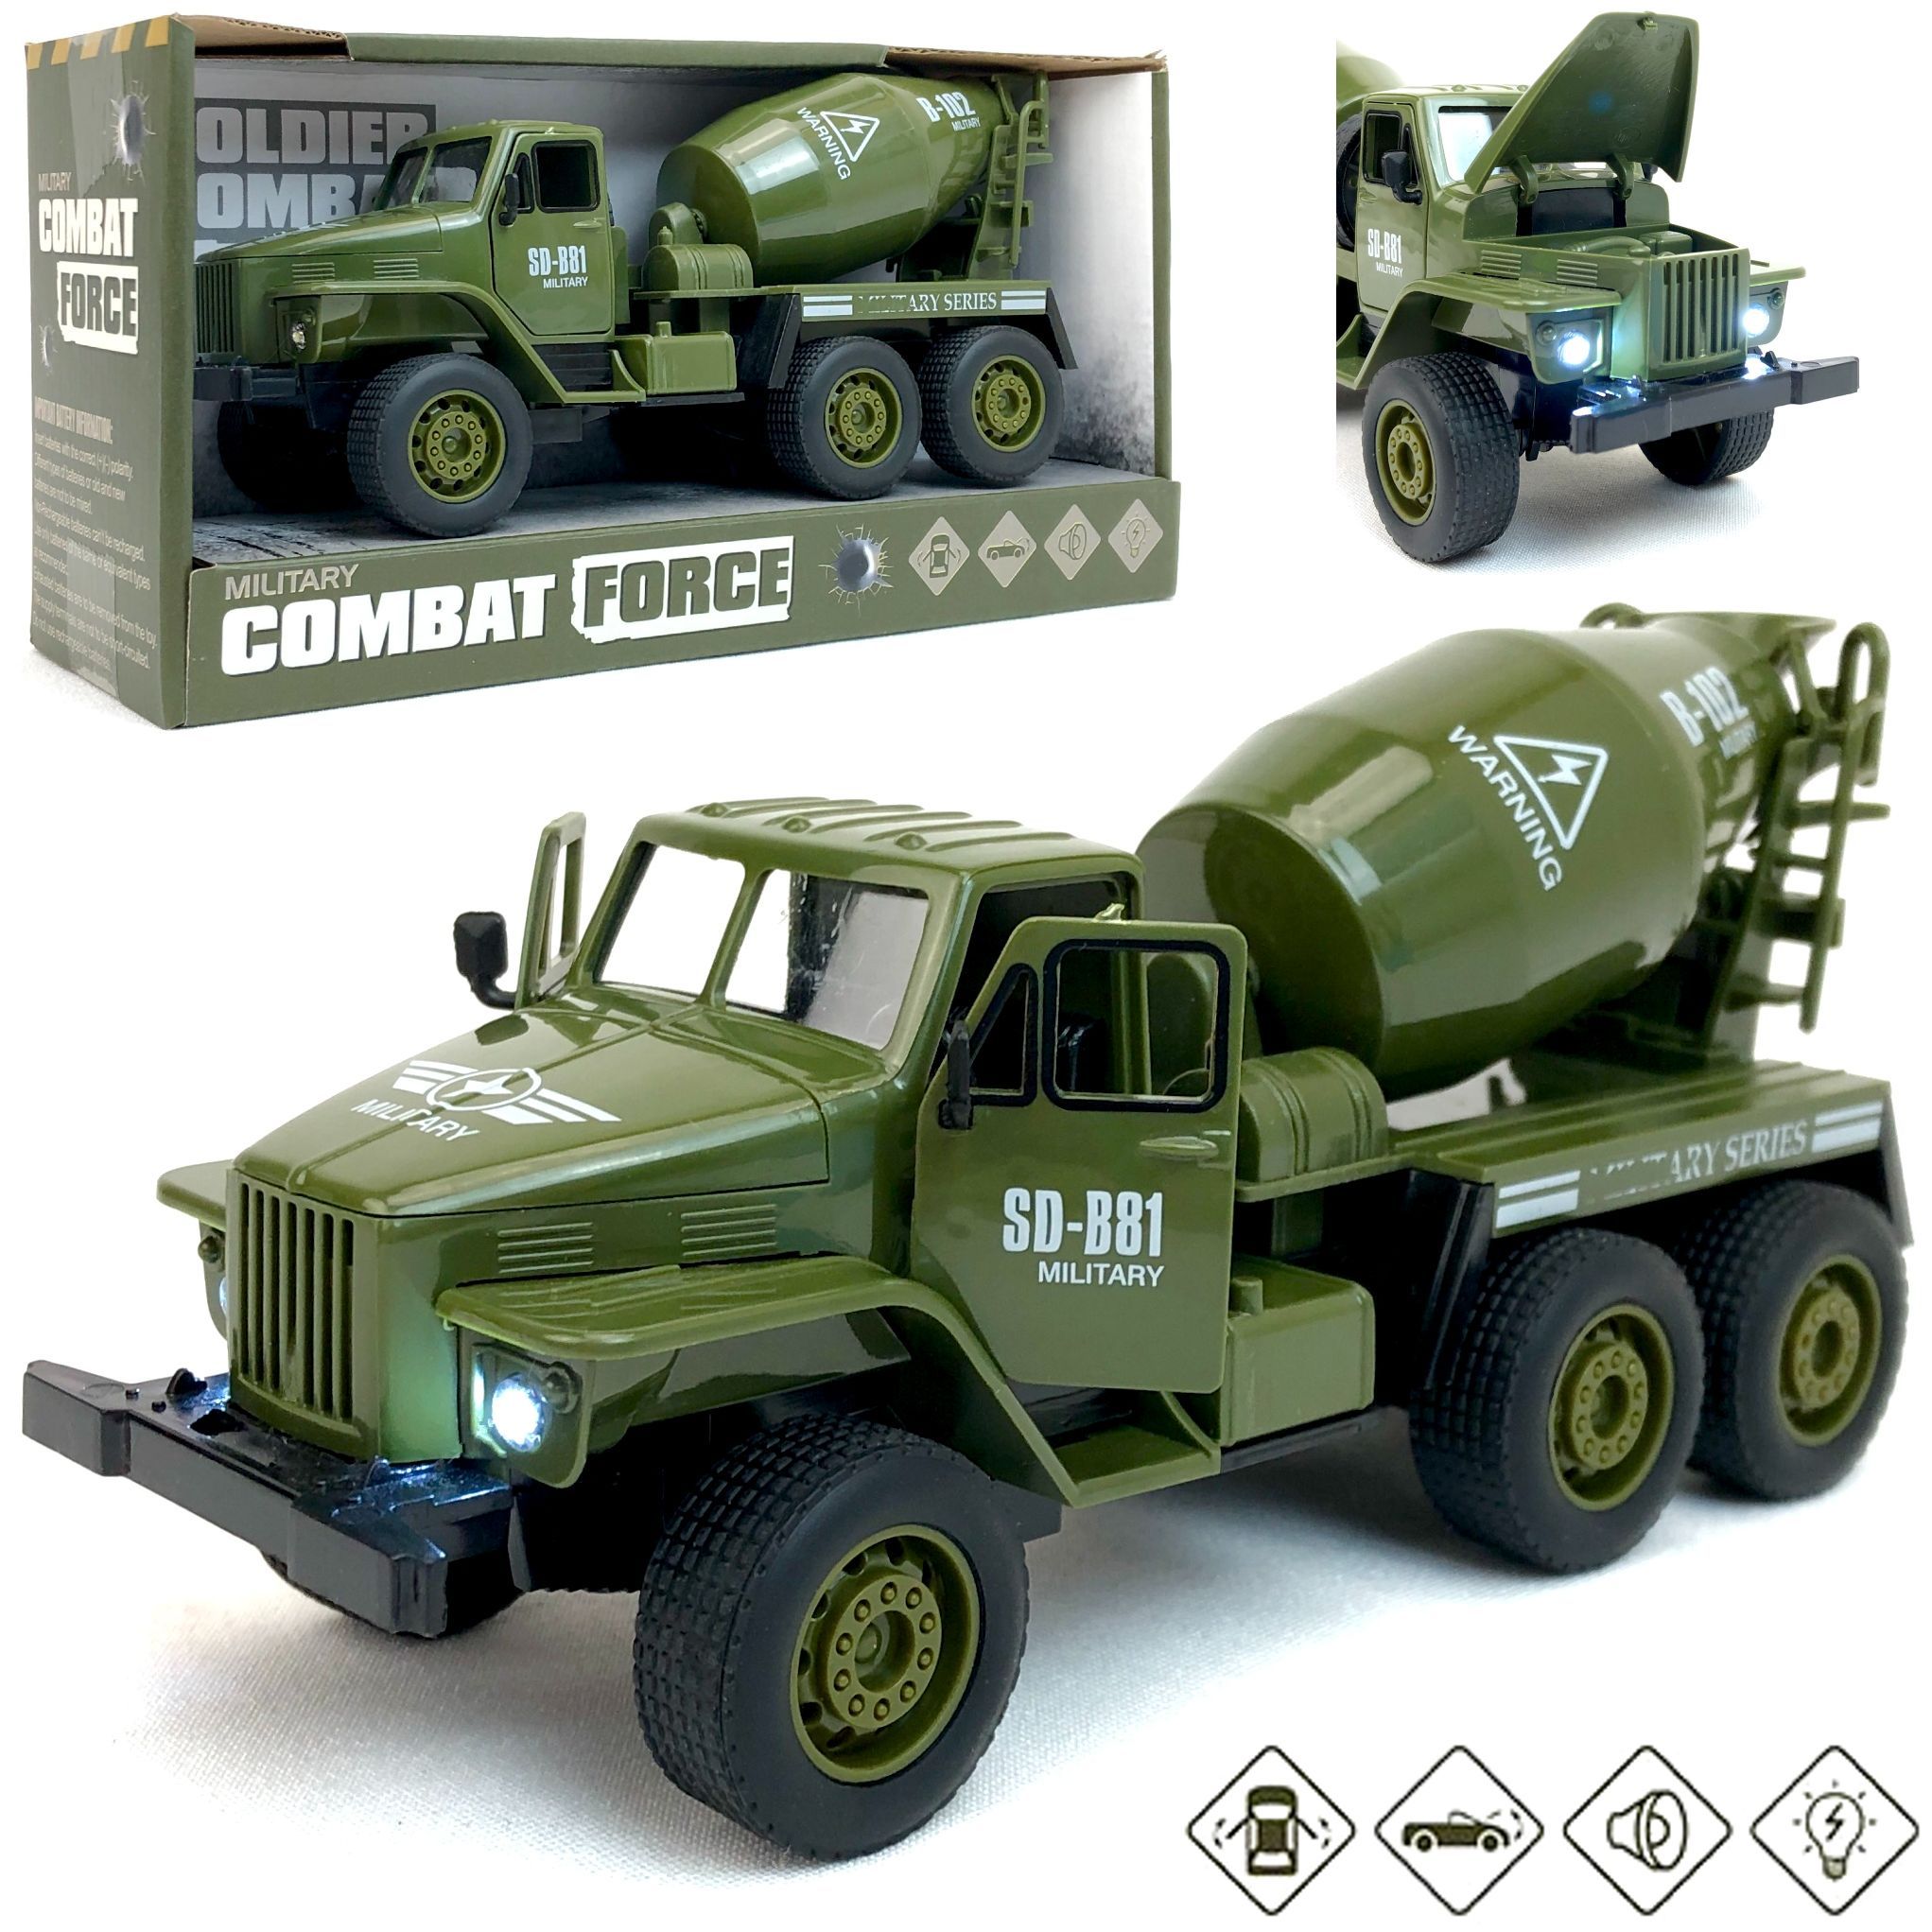 Инерционный военный грузовик PLAYSMART Combat Force, открываются двери и капот kiddiedrive инерционный военный грузовик 1601715